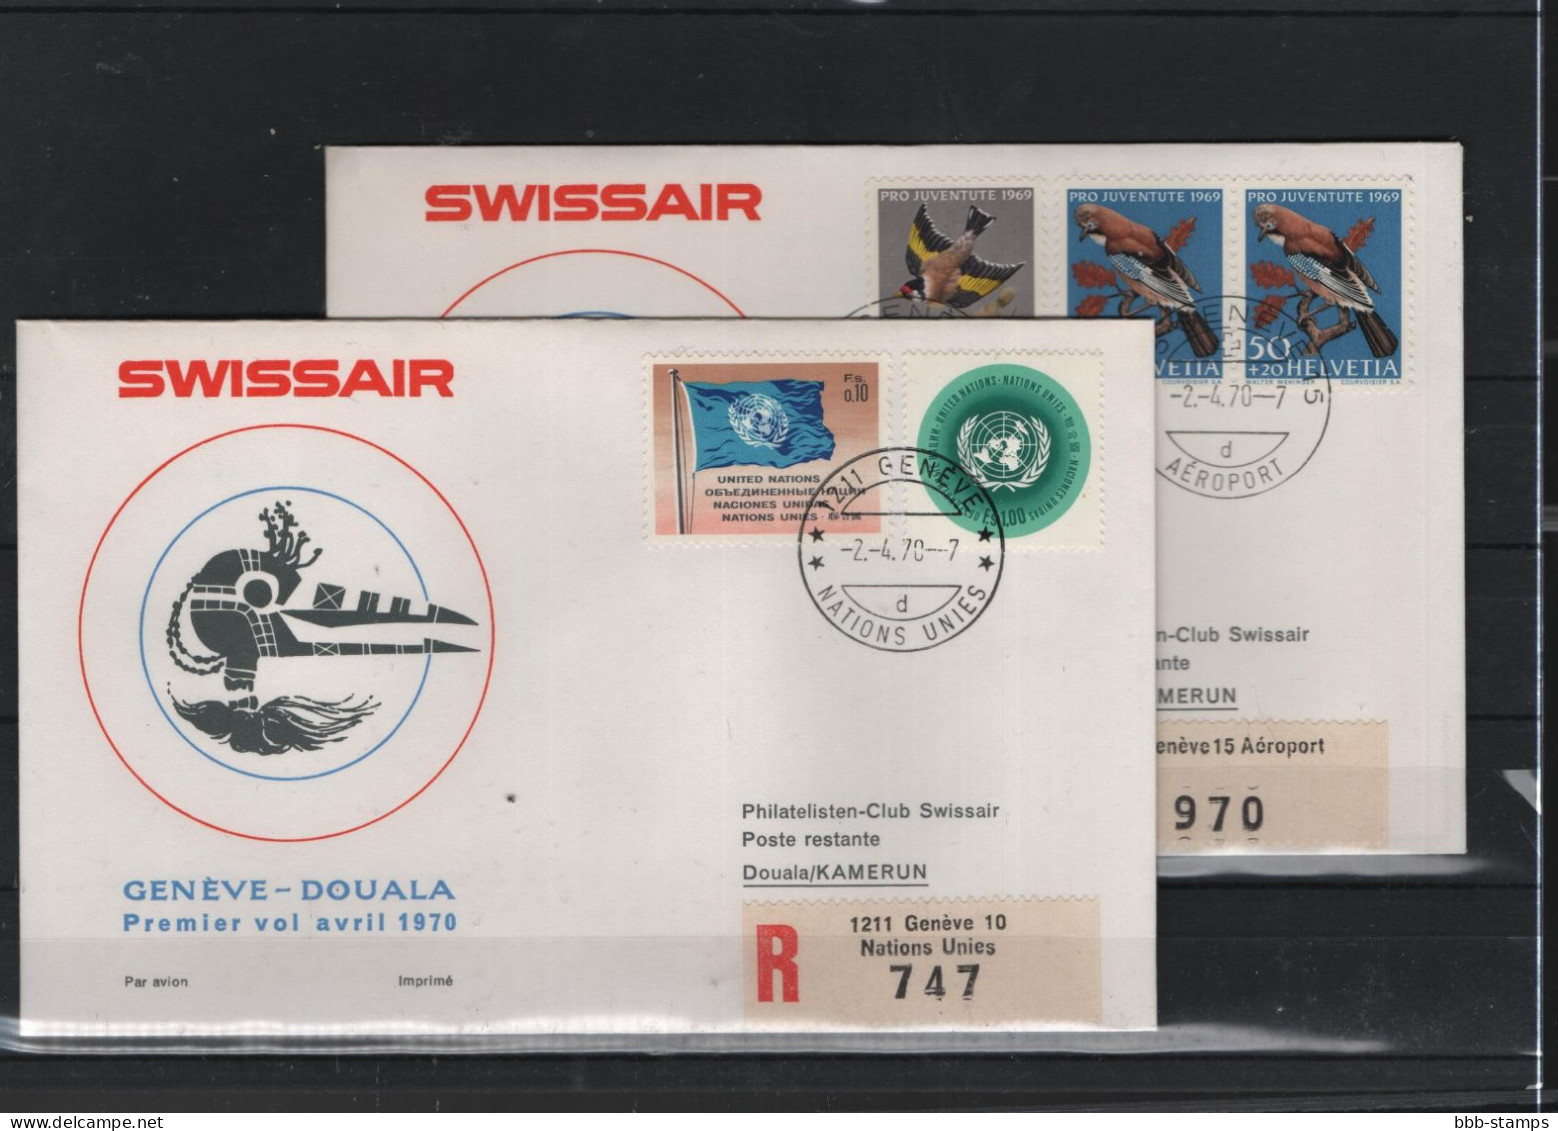 Schweiz Luftpost FFC Swissair 2.4.1970 Genf - Duala VV - Eerste Vluchten